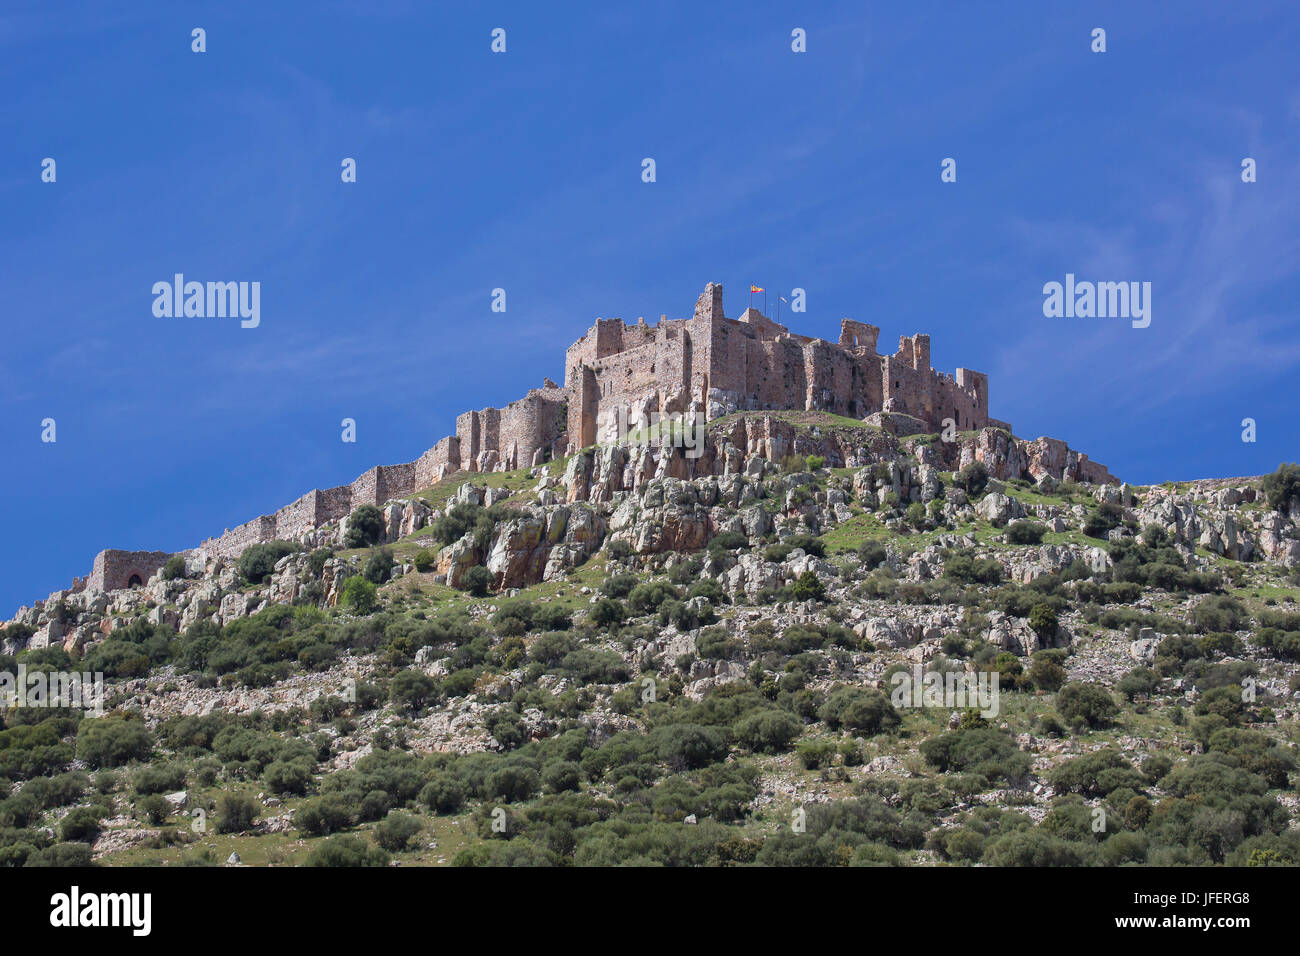 Spain, Castilla La Mancha Region, Ciudad Real Province, Calatrava Castle, Stock Photo